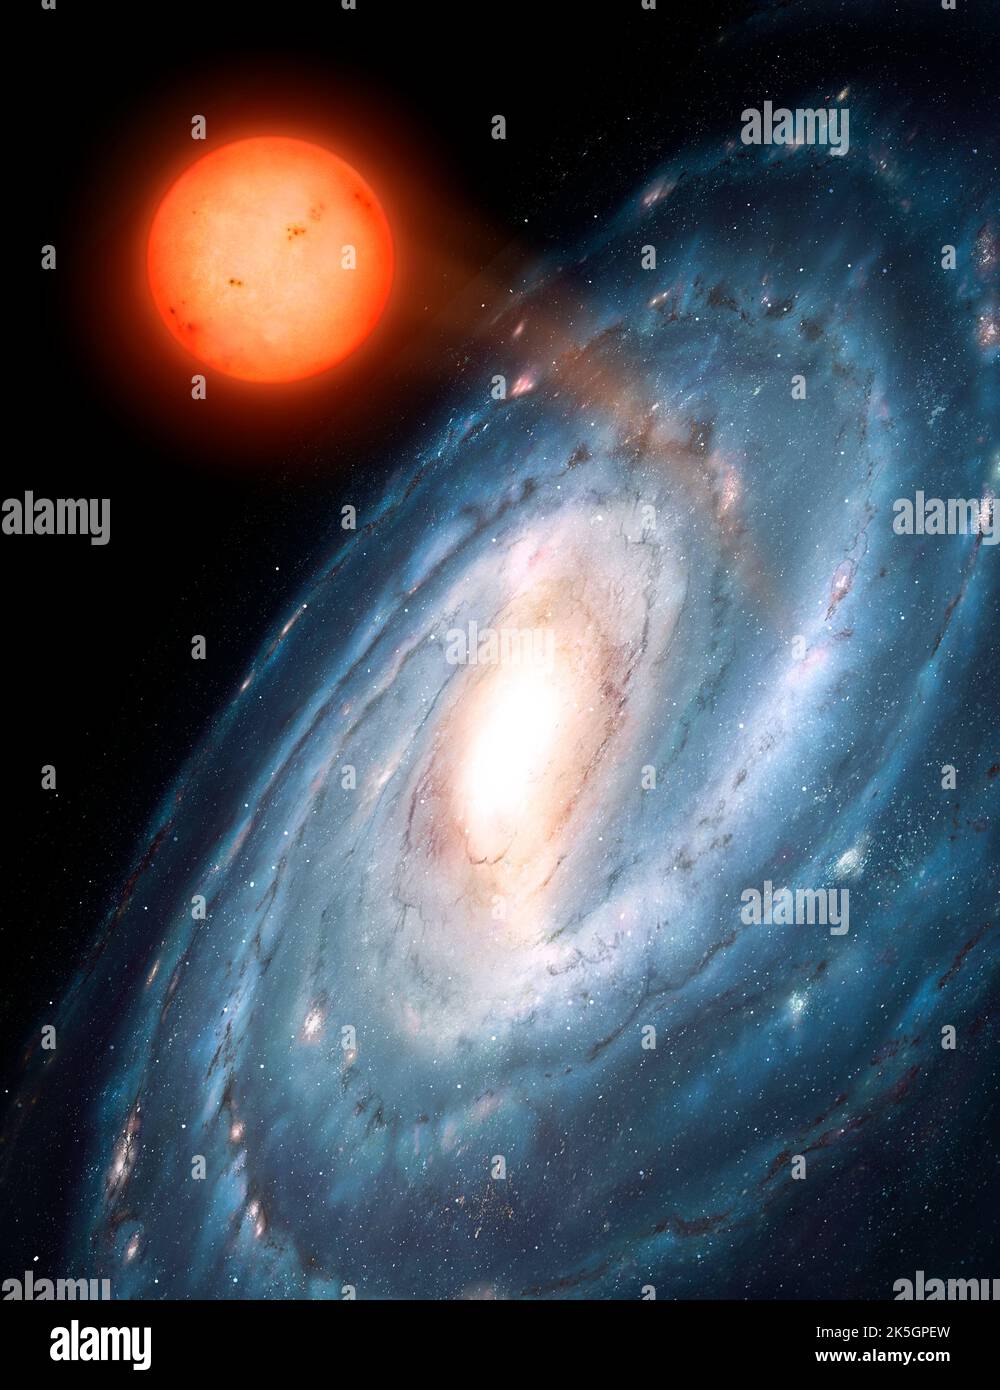 Ceci montre une galaxie spirale hypothétique vue à partir d'un angle oblique. Une étoile naine rouge a été éjectée par la galaxie à grande vitesse et va errer le vide entre les galaxies. Ces objets sont connus comme des étoiles flottantes. Banque D'Images